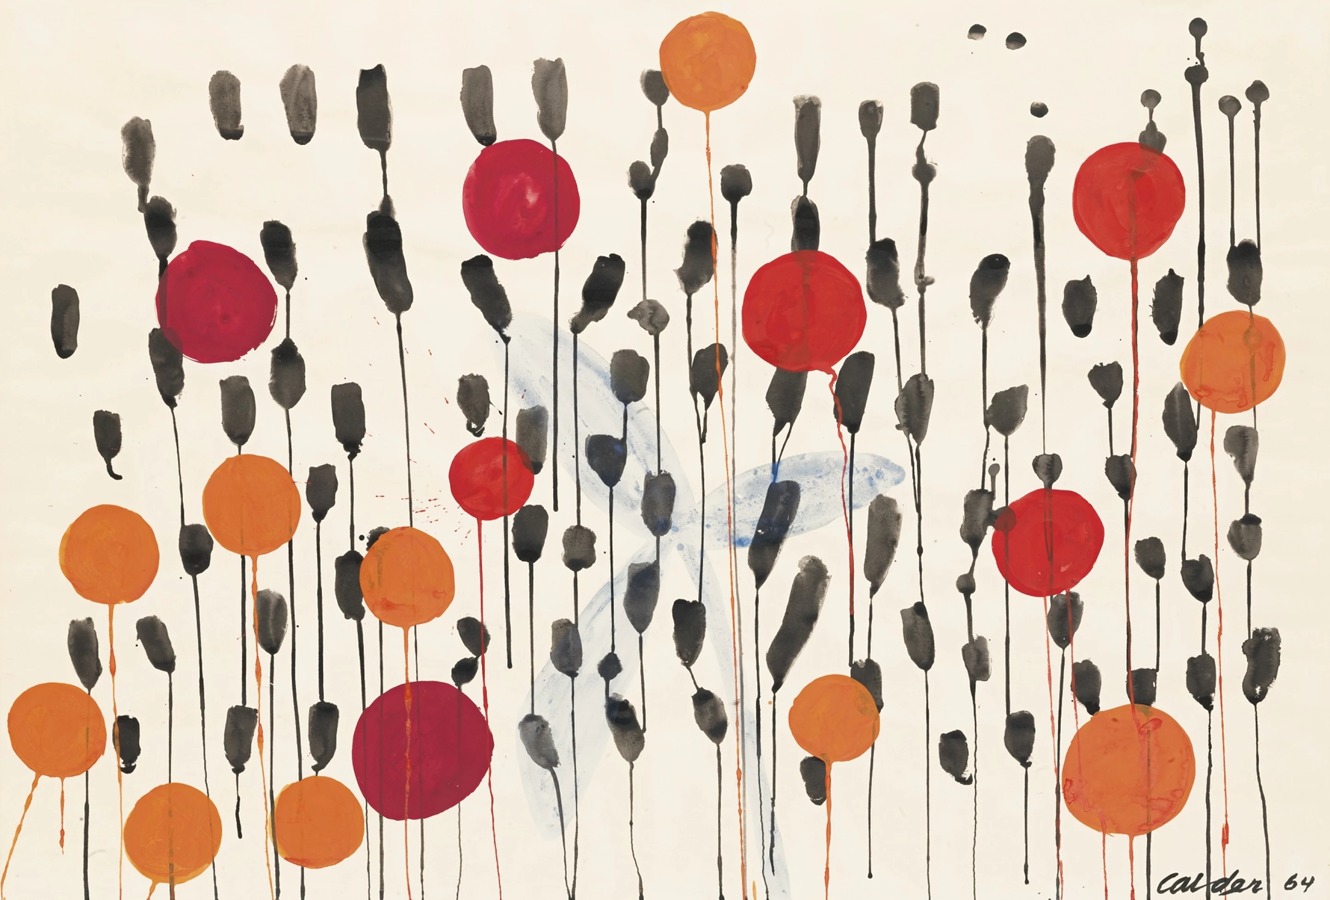 Alexander Calder - Balloons and Blue Flower